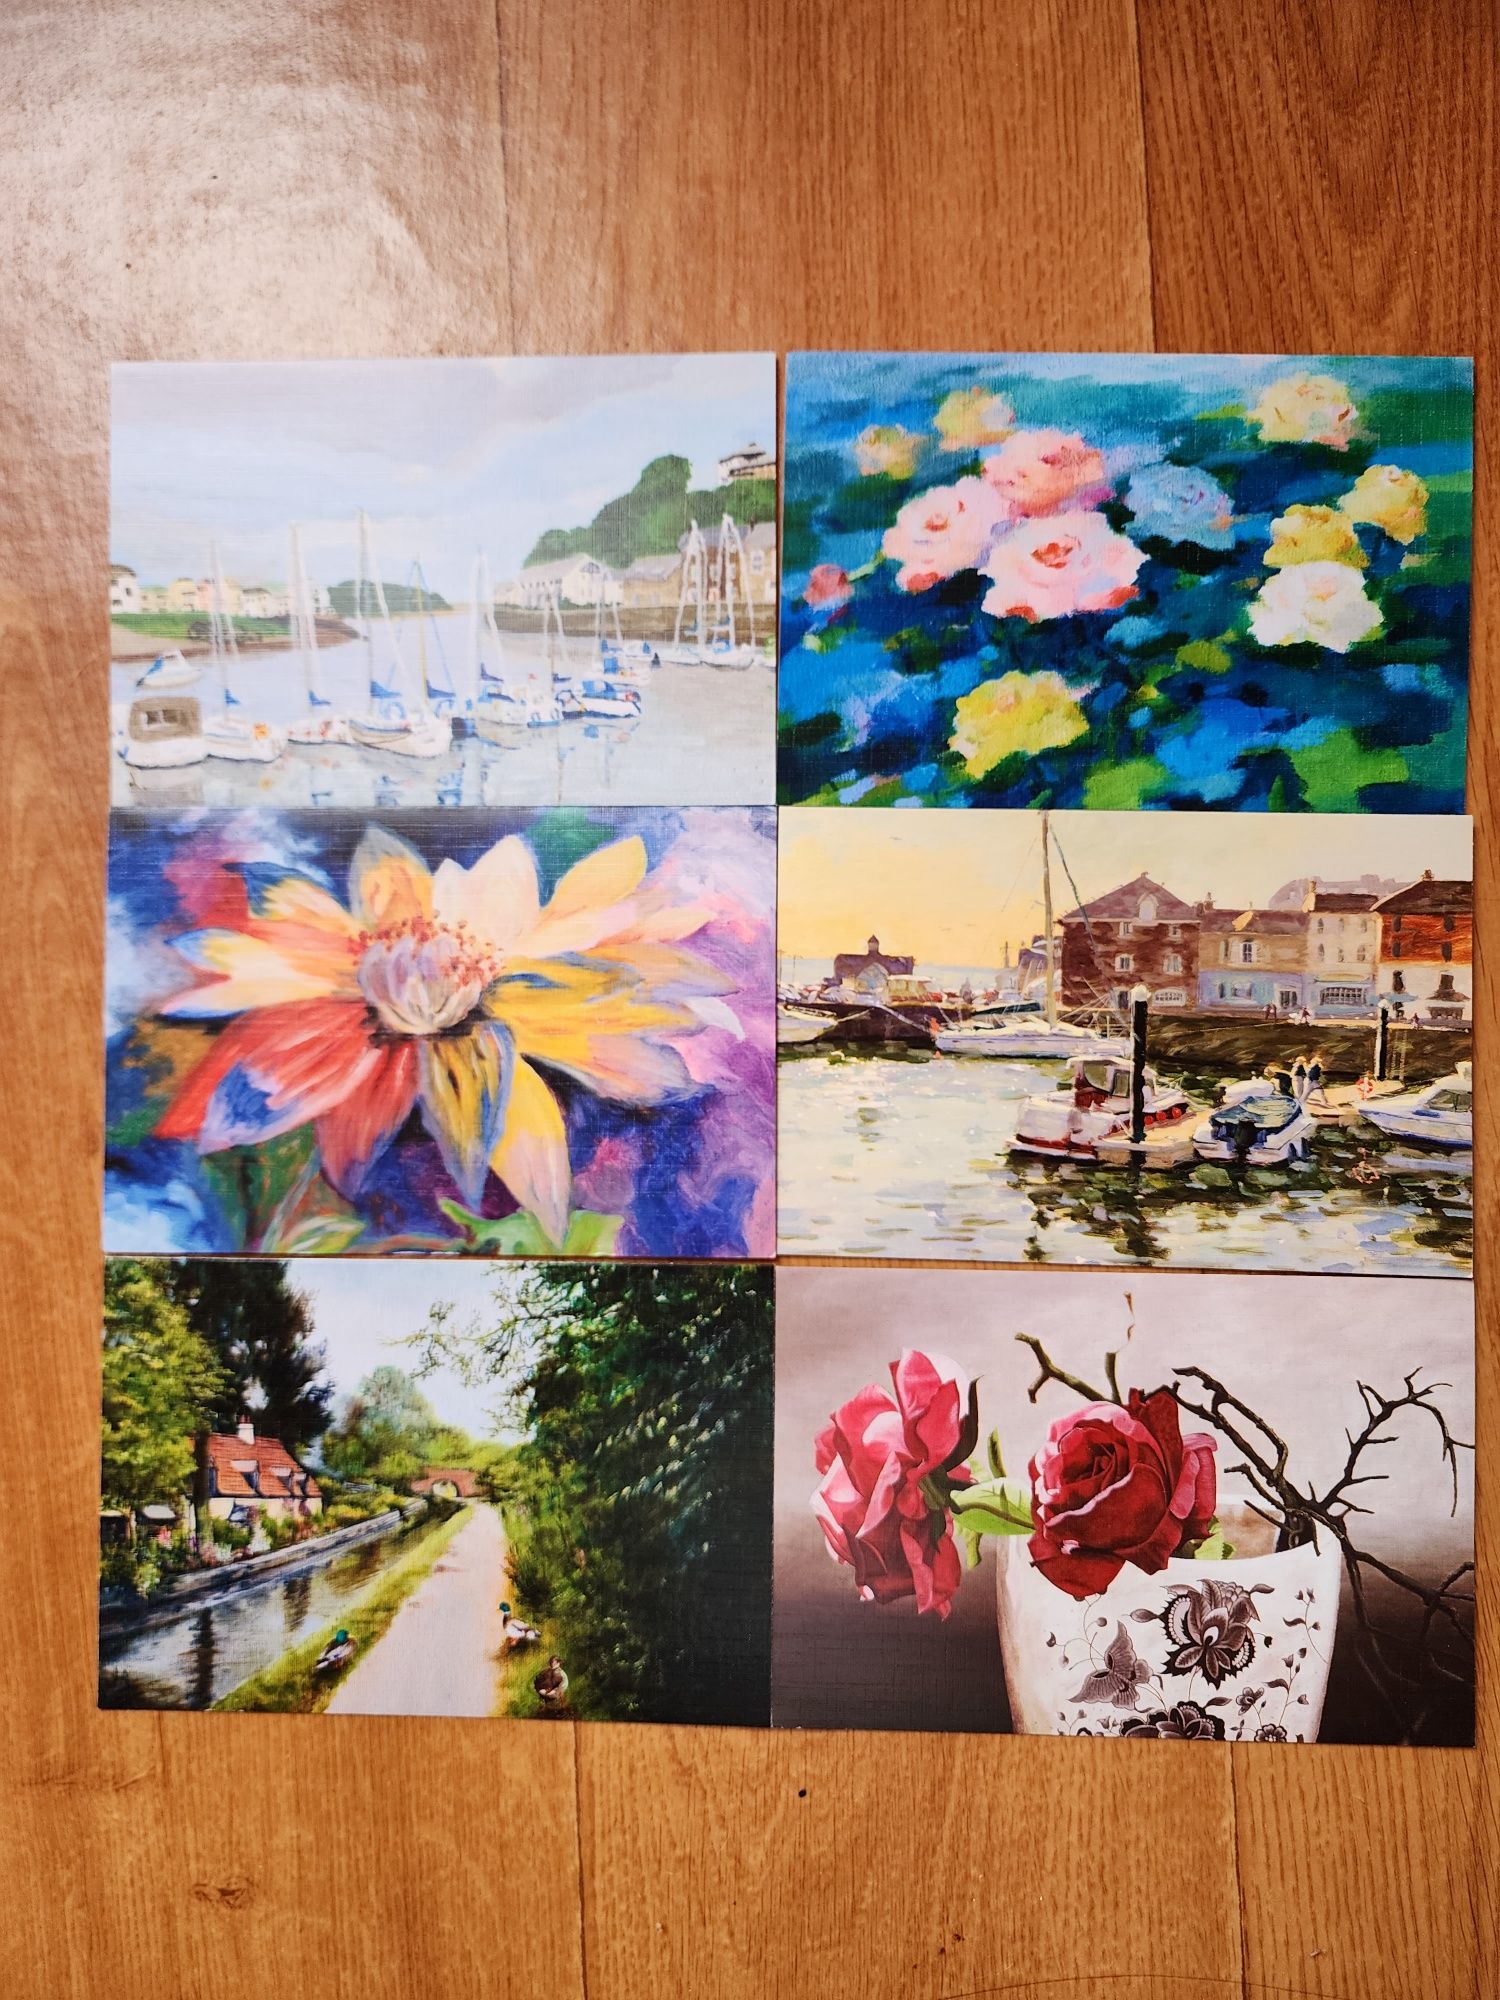 Серія листівок зображень картин майстрів, квіти та море, 40 одиниць.